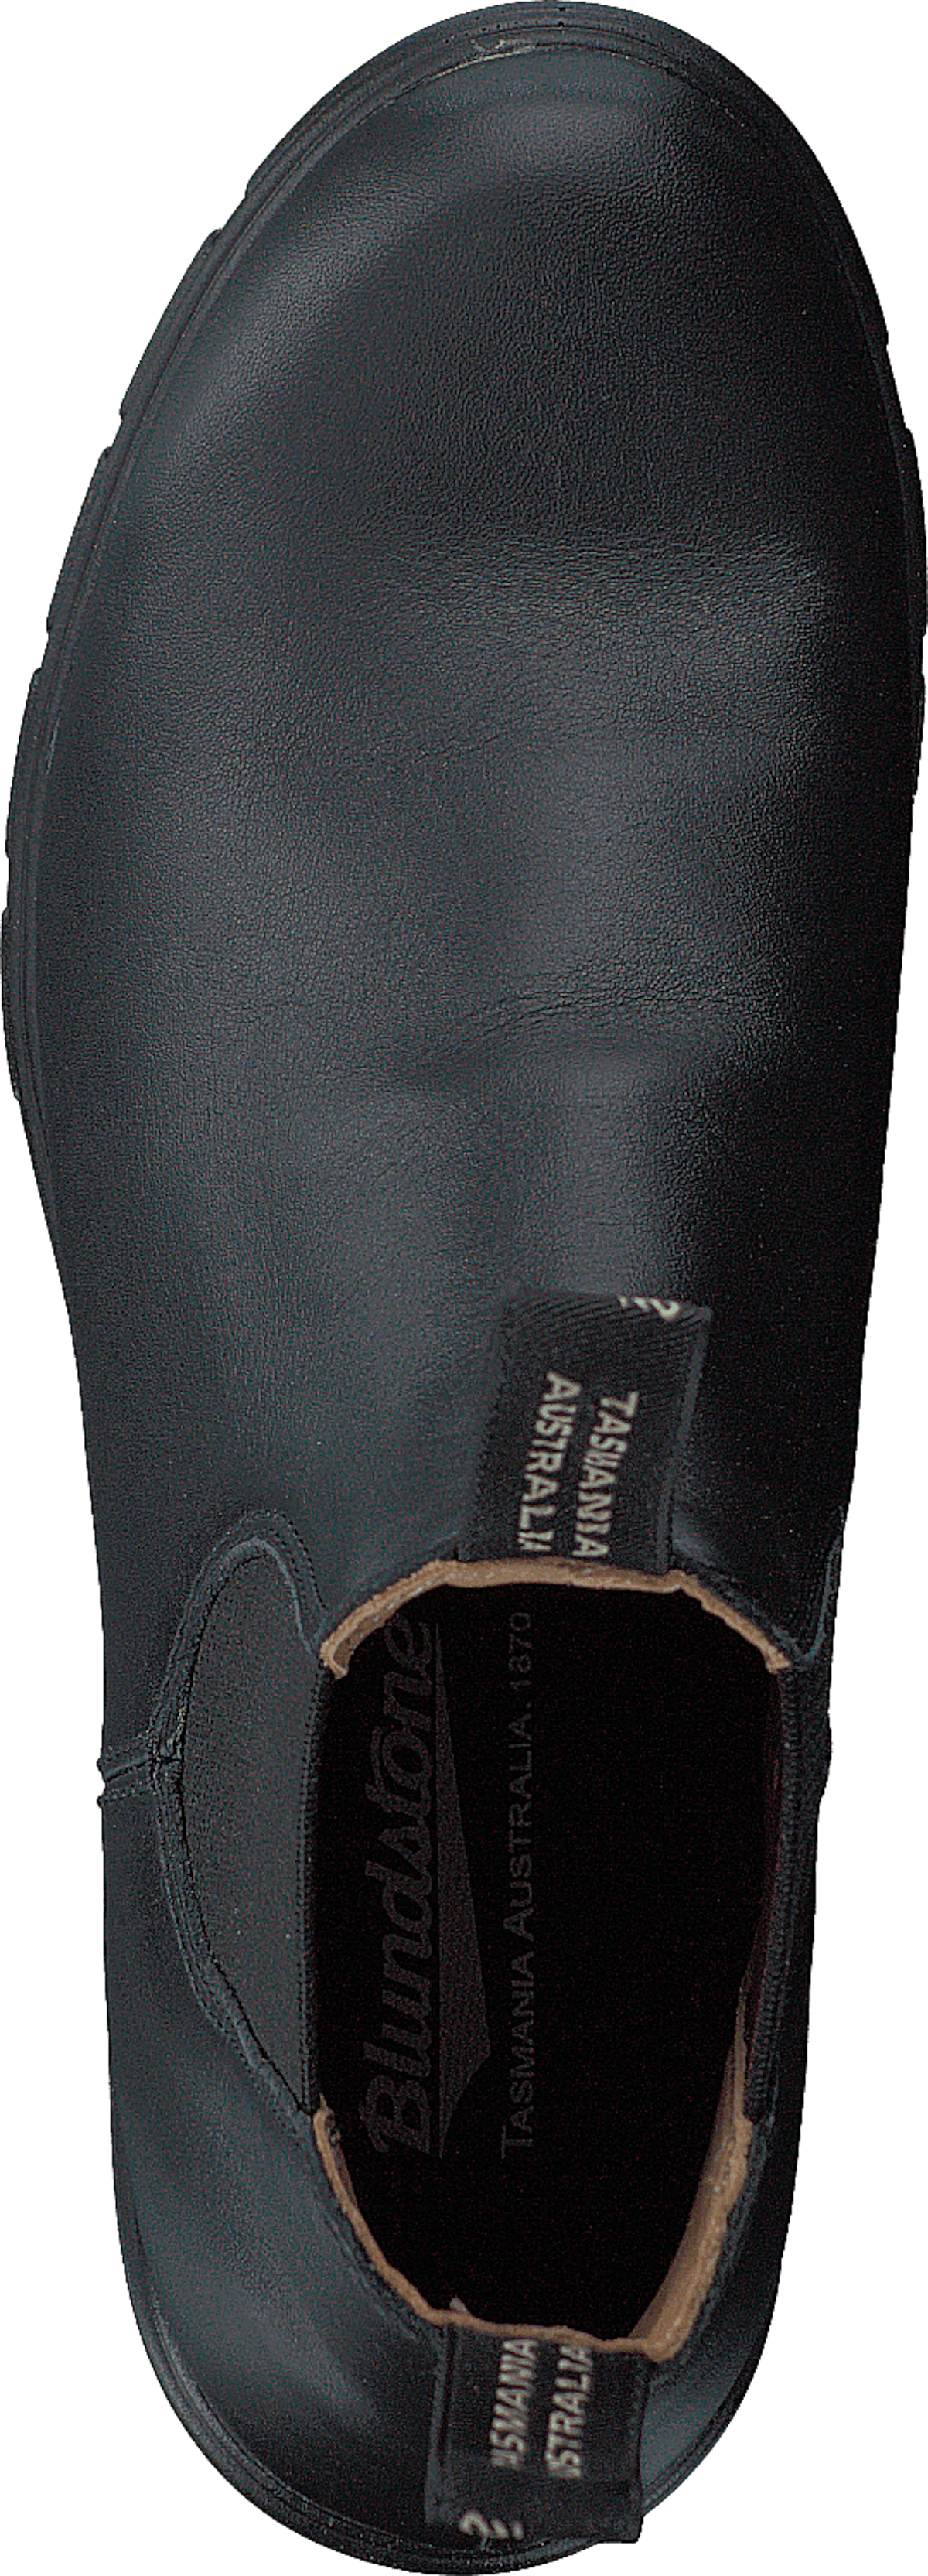 BL 1671 Womens Originals Heel Boot Black